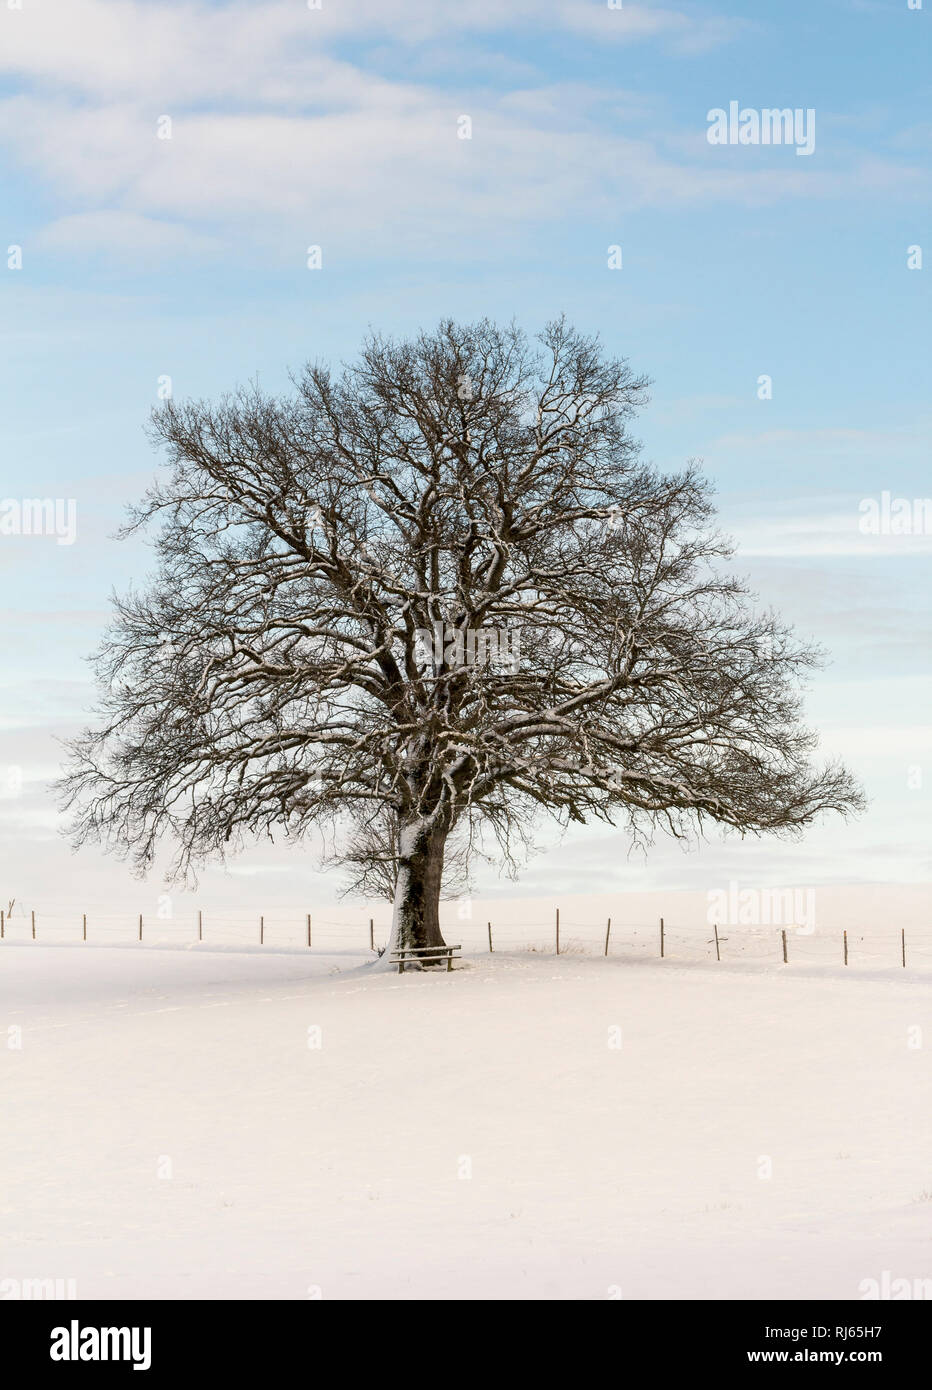 Baum in einsamer Schneelandschaft Stock Photo